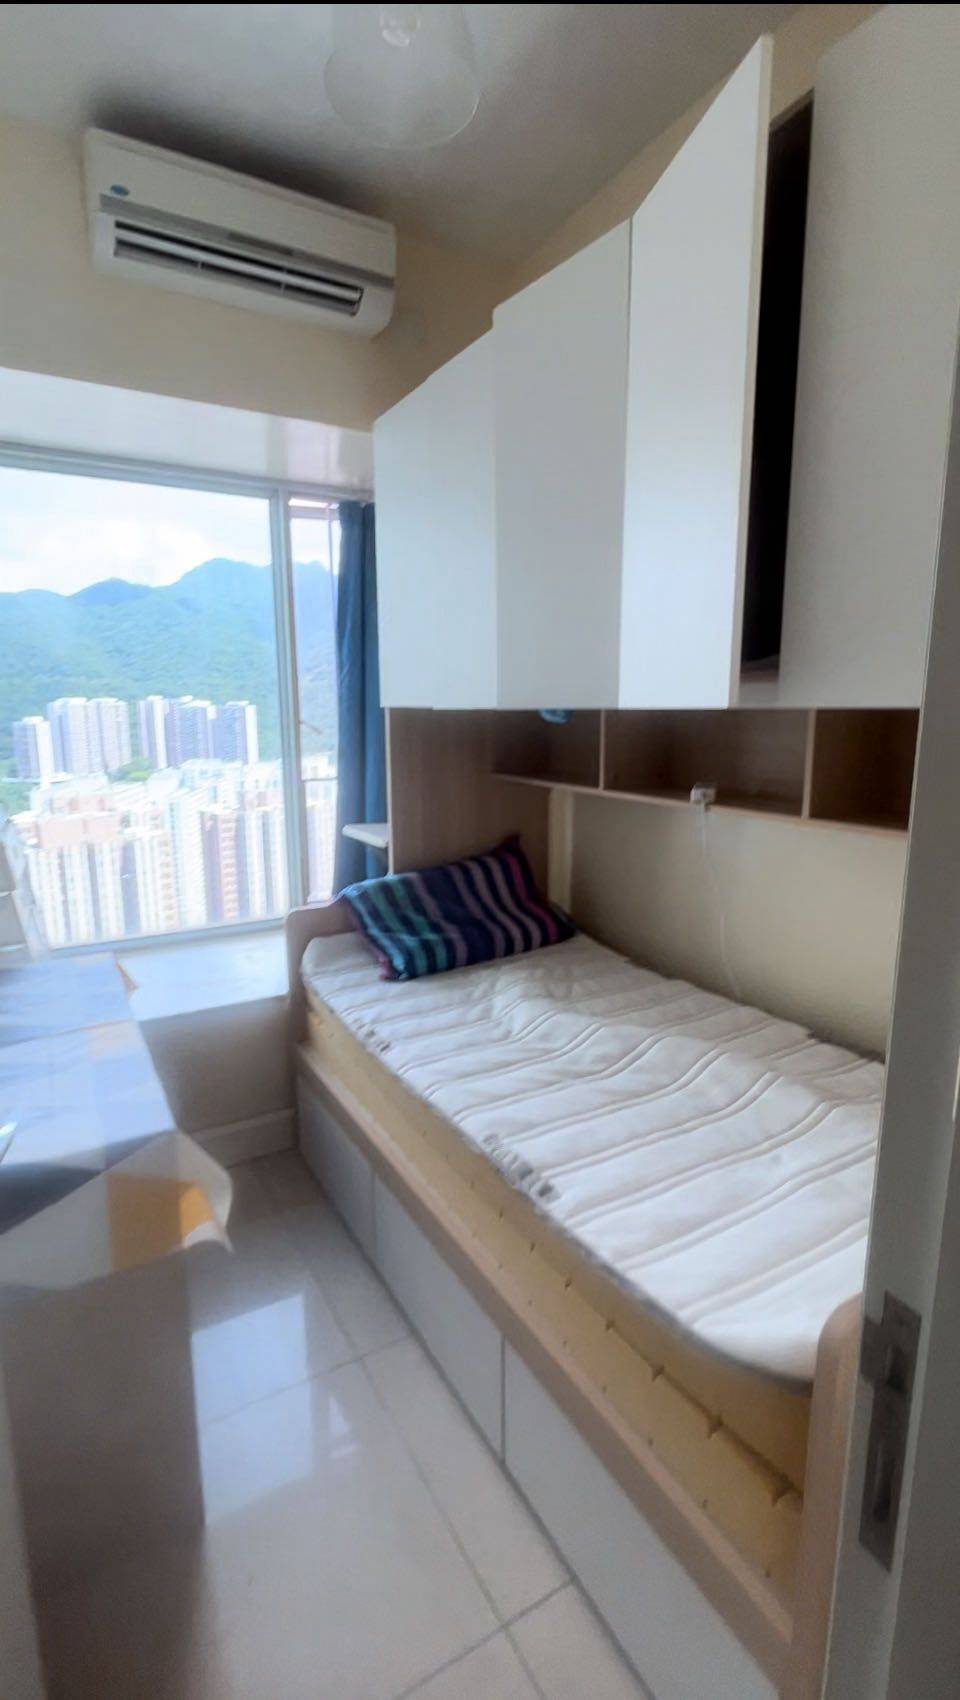 香港-新界-豪宅大户型,低价转